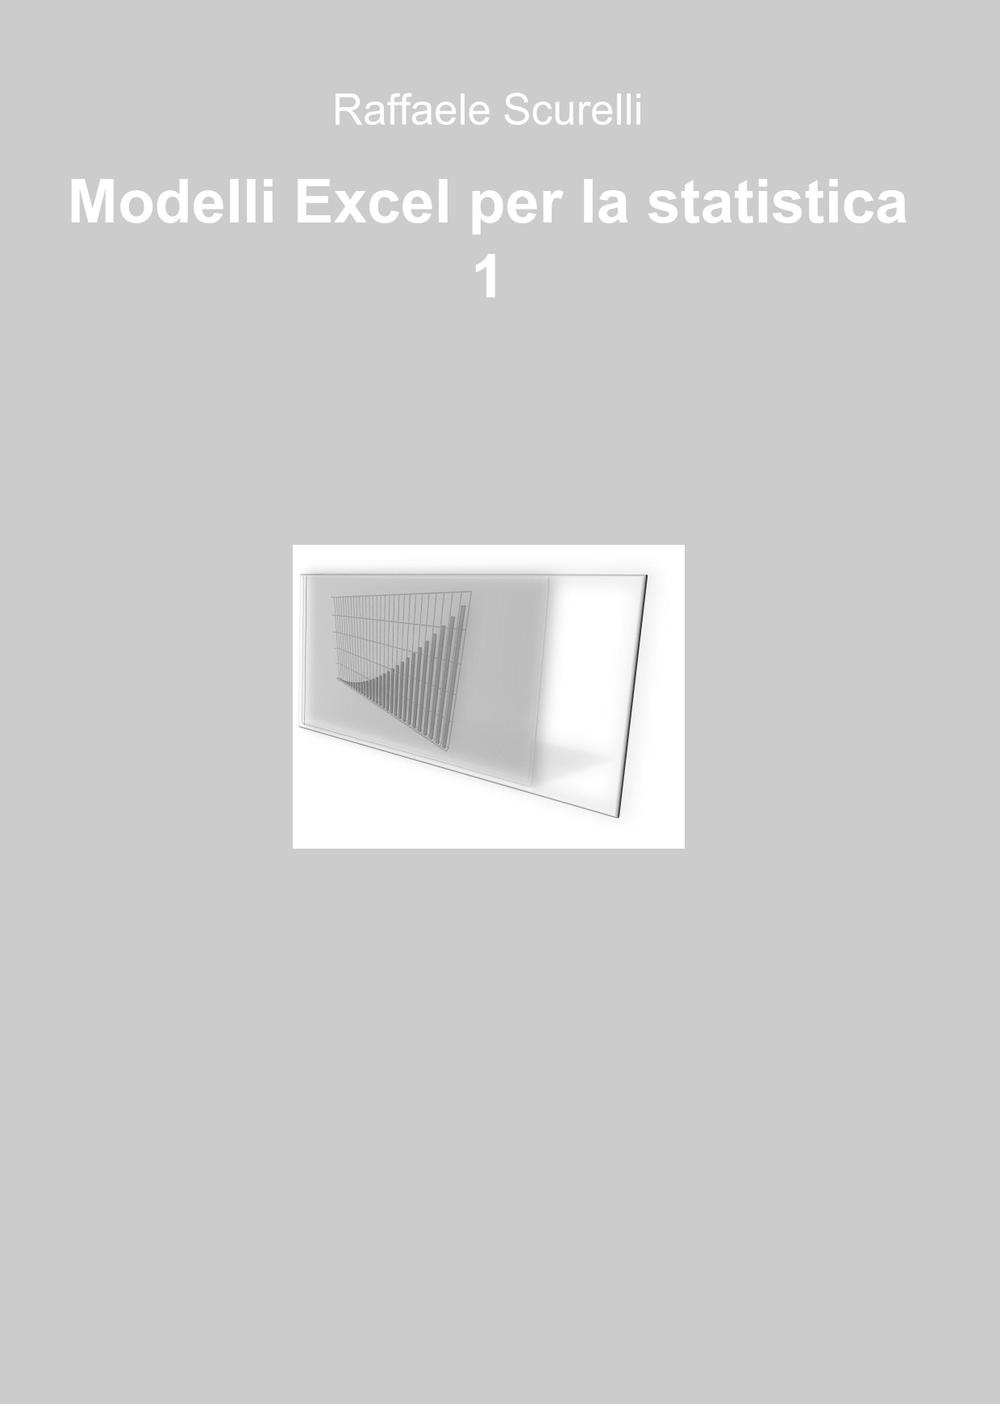 Image of Modelli Excel per la statistica